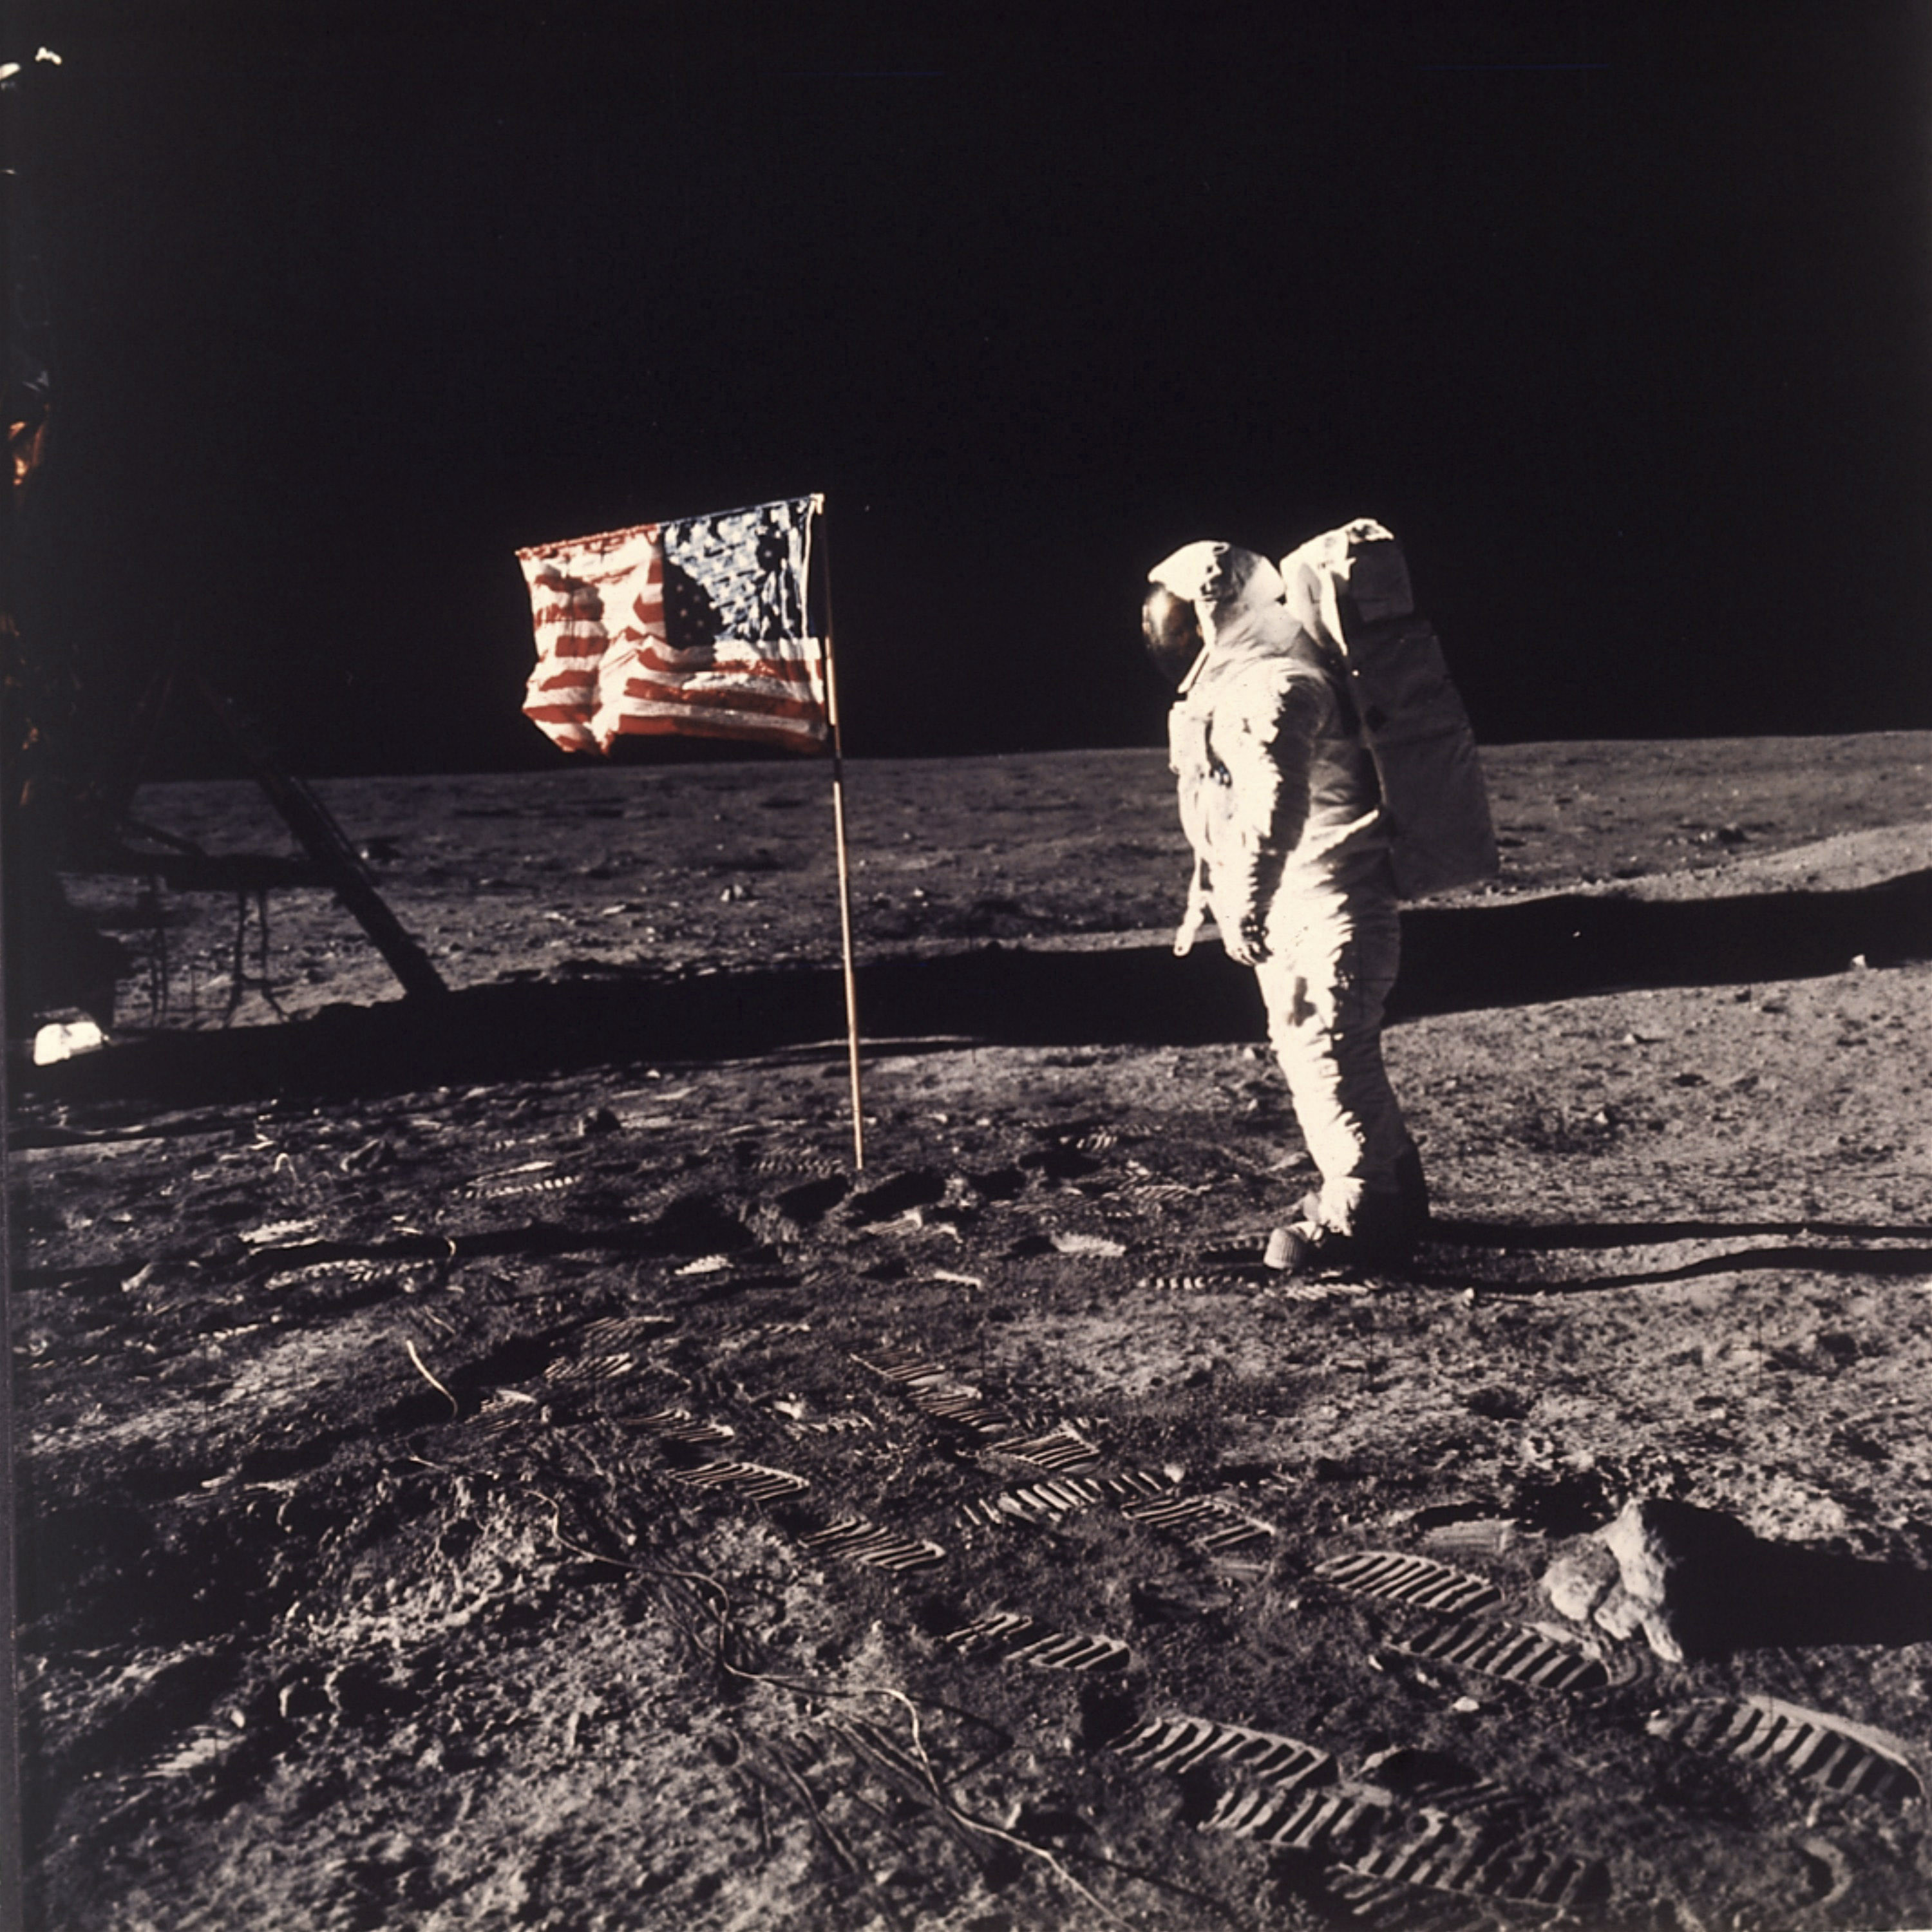 Aldrin vicino alla bandiera americana piantata sulla luna insieme ad una targa che riporta le firme dei tre astronauti e dell’allora presidente americano Richard Nixon e la seguente scritta: “Qui nel luglio 1969 misero per la prima volta piede sulla Luna uomini venuti dal pianeta Terra, siamo venuti in pace per l'intera umanità”